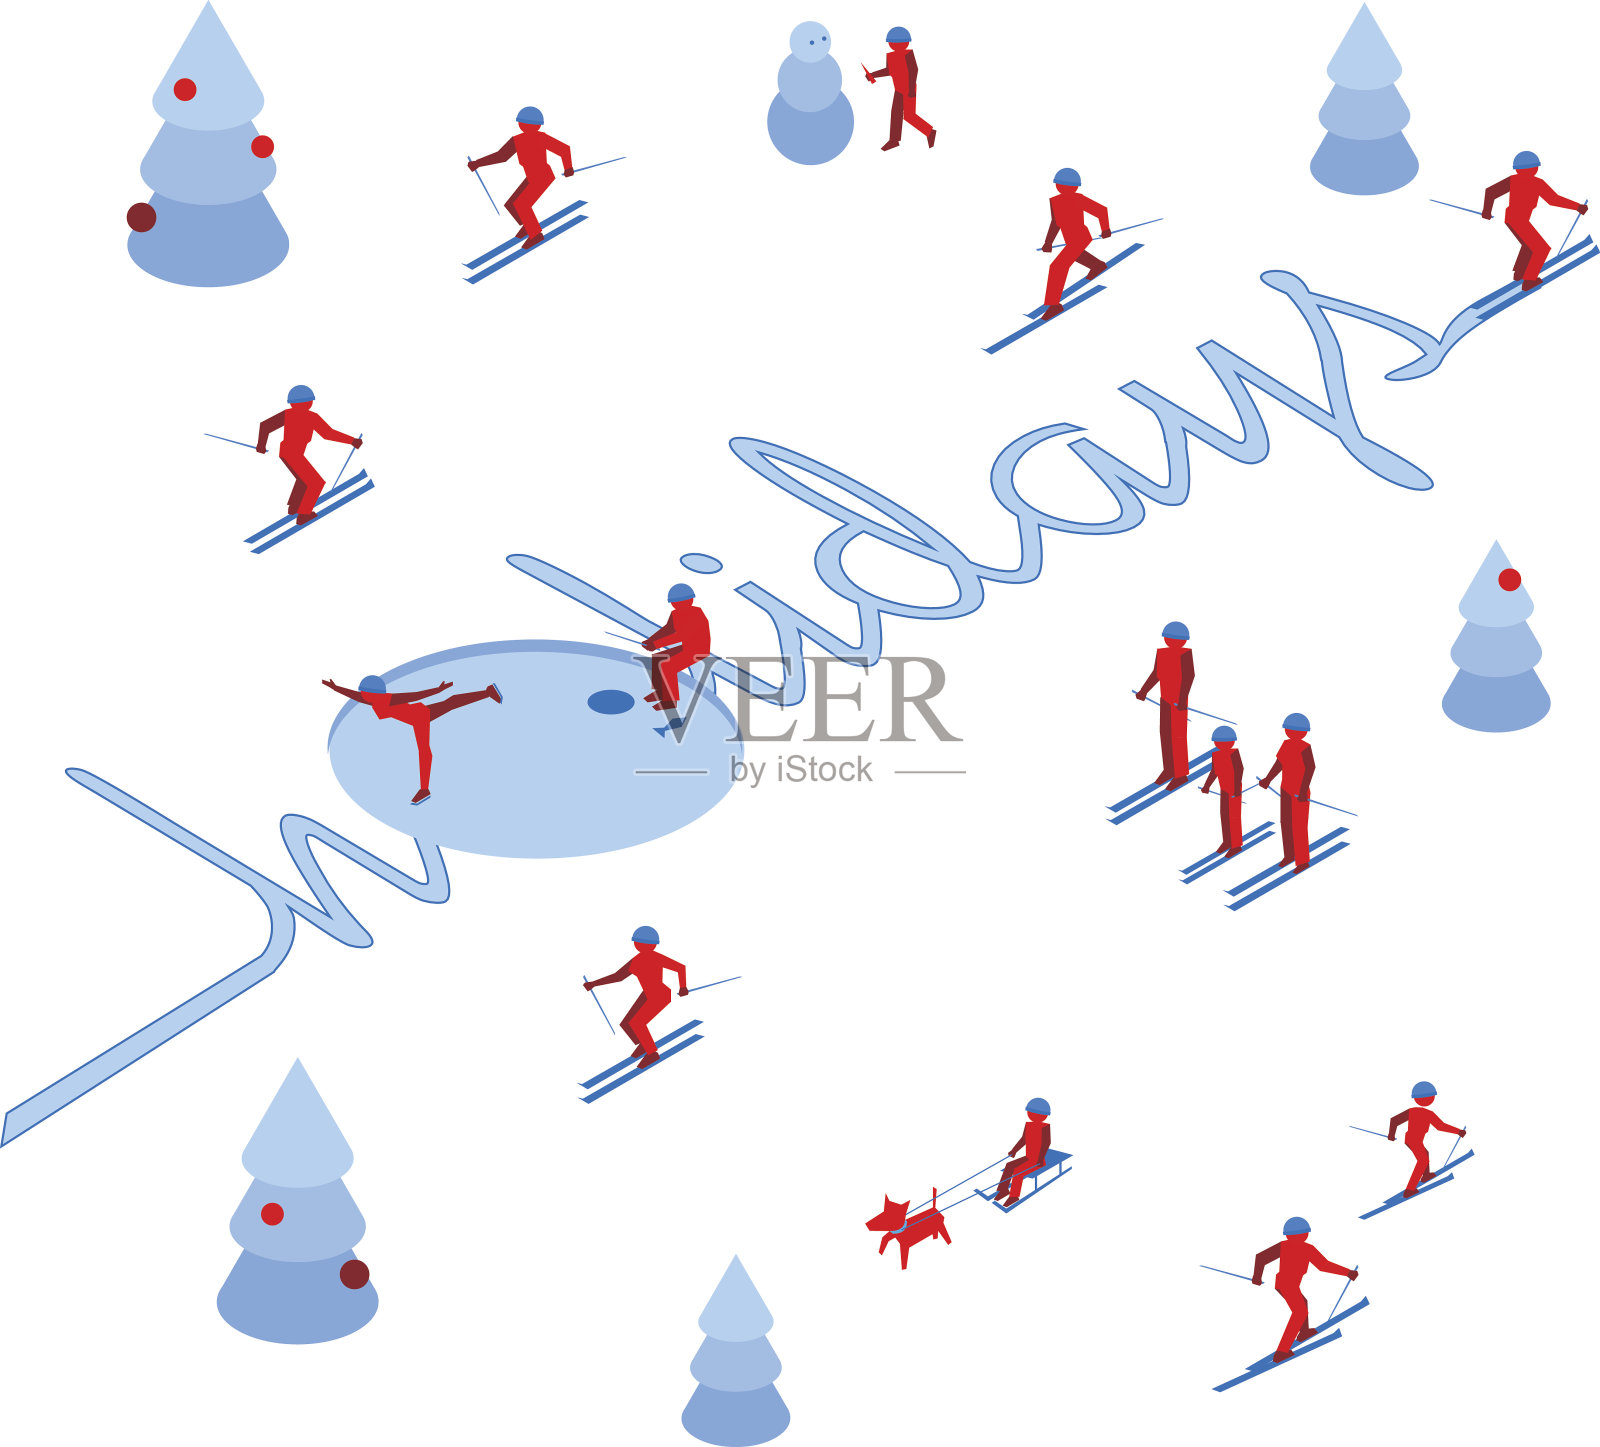 滑雪者留下了“假日”一词的痕迹插画图片素材